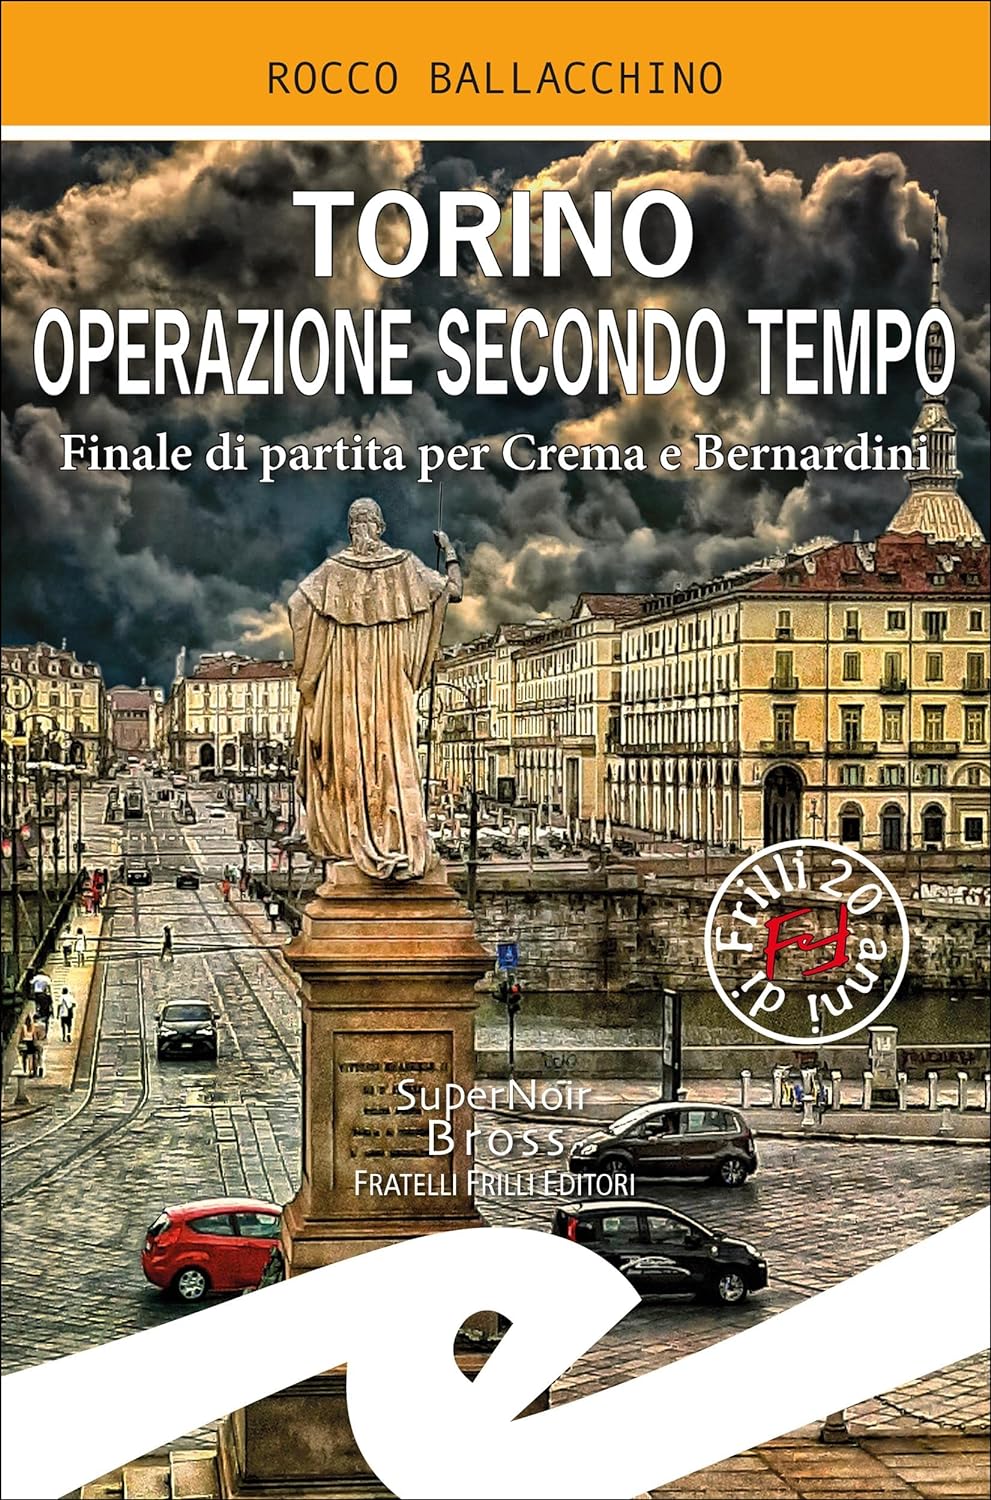 Rocco Ballacchino: Torino operazione secondo tempo (EBook, Italiano language, 2020, Fratelli Frilli)